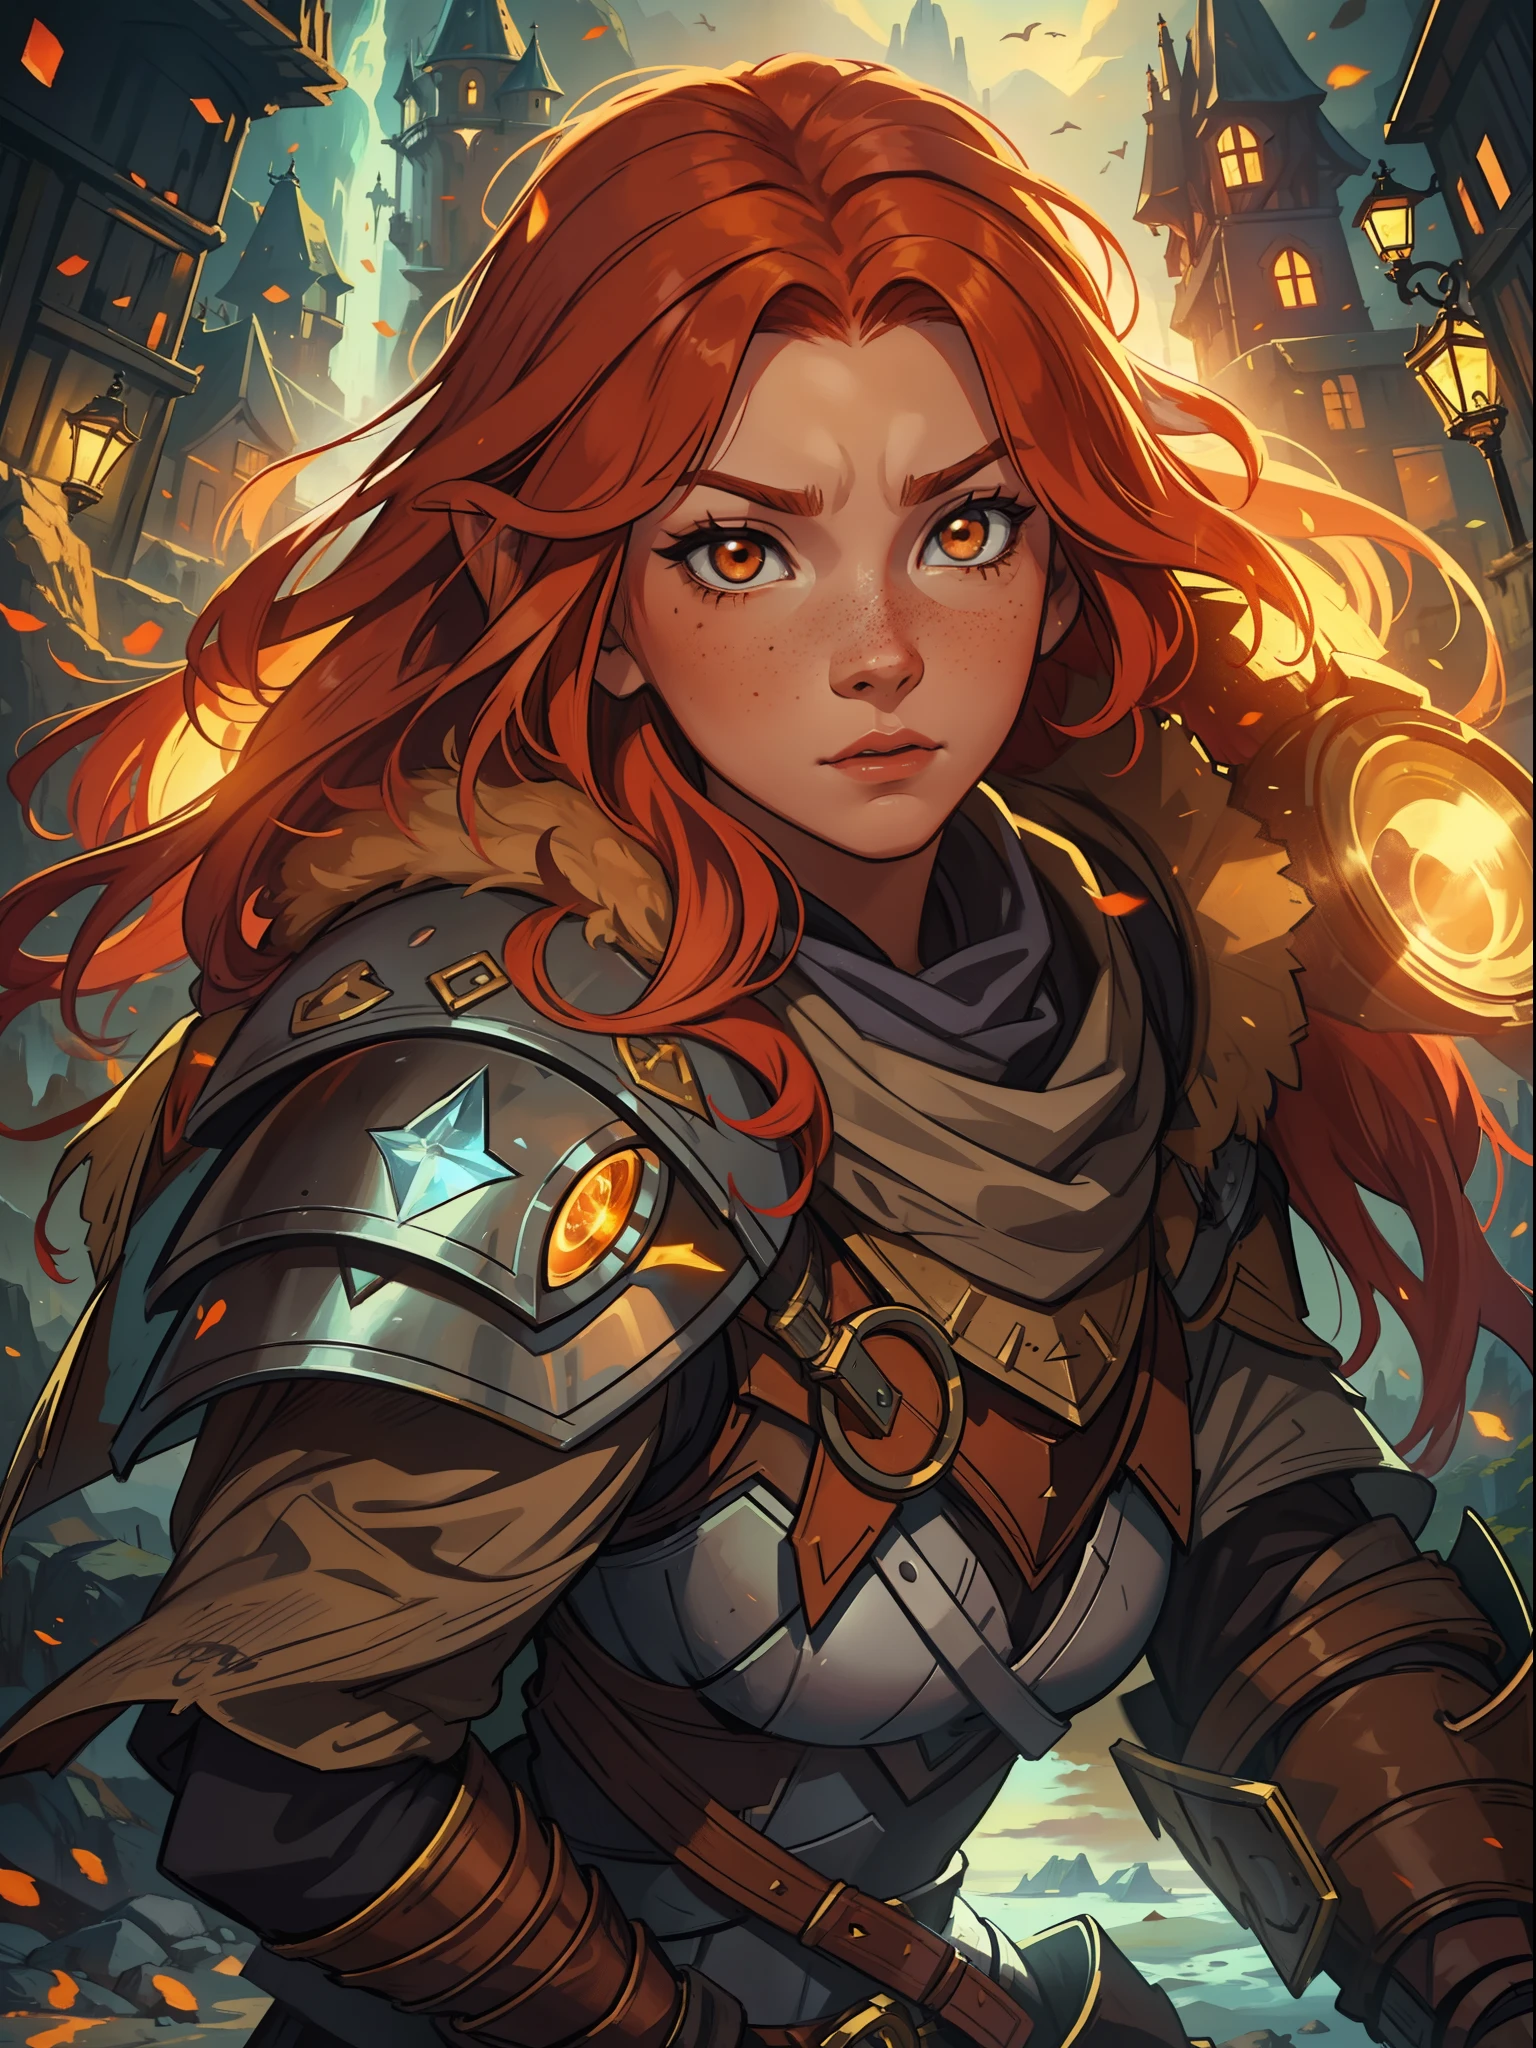 一名年轻的红发少女，有着橙色的头发和棕色的眼睛，她有一些雀斑，看起来很勇敢，她是一名战士，穿着强大的魔法盔甲，适合中世纪角色扮演游戏, 充满魔幻和神奇灯光的背景，山中堡垒的轮廓灯和电影灯光, 灵感来自英雄联盟中的蕾欧娜,  基于魔法和巨型盾牌的强大而耐用的盔甲